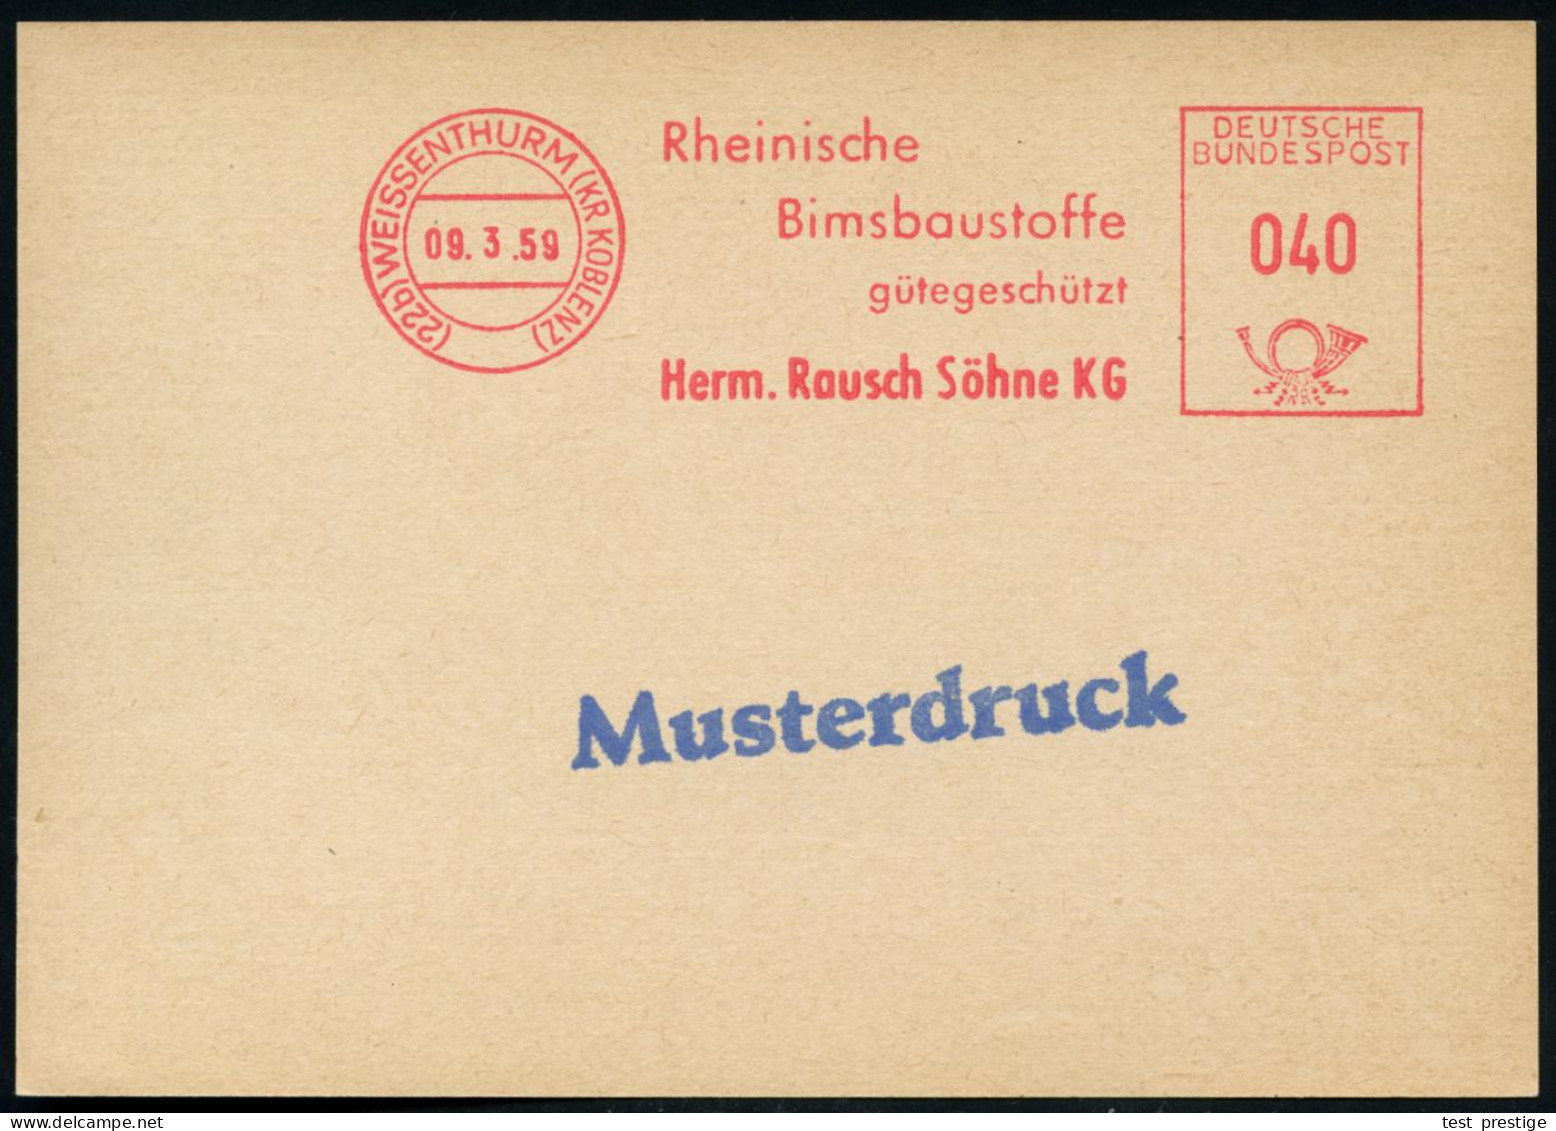 (22b) WEISSENTHURM (KR KOBLENZ)/ Rhein./ Bimsbaustoffe/ Gütegeschütz/ Herm.Rausch Söhne KG 1959 (9.3.) AFS 040 Pf. Franc - Chimie